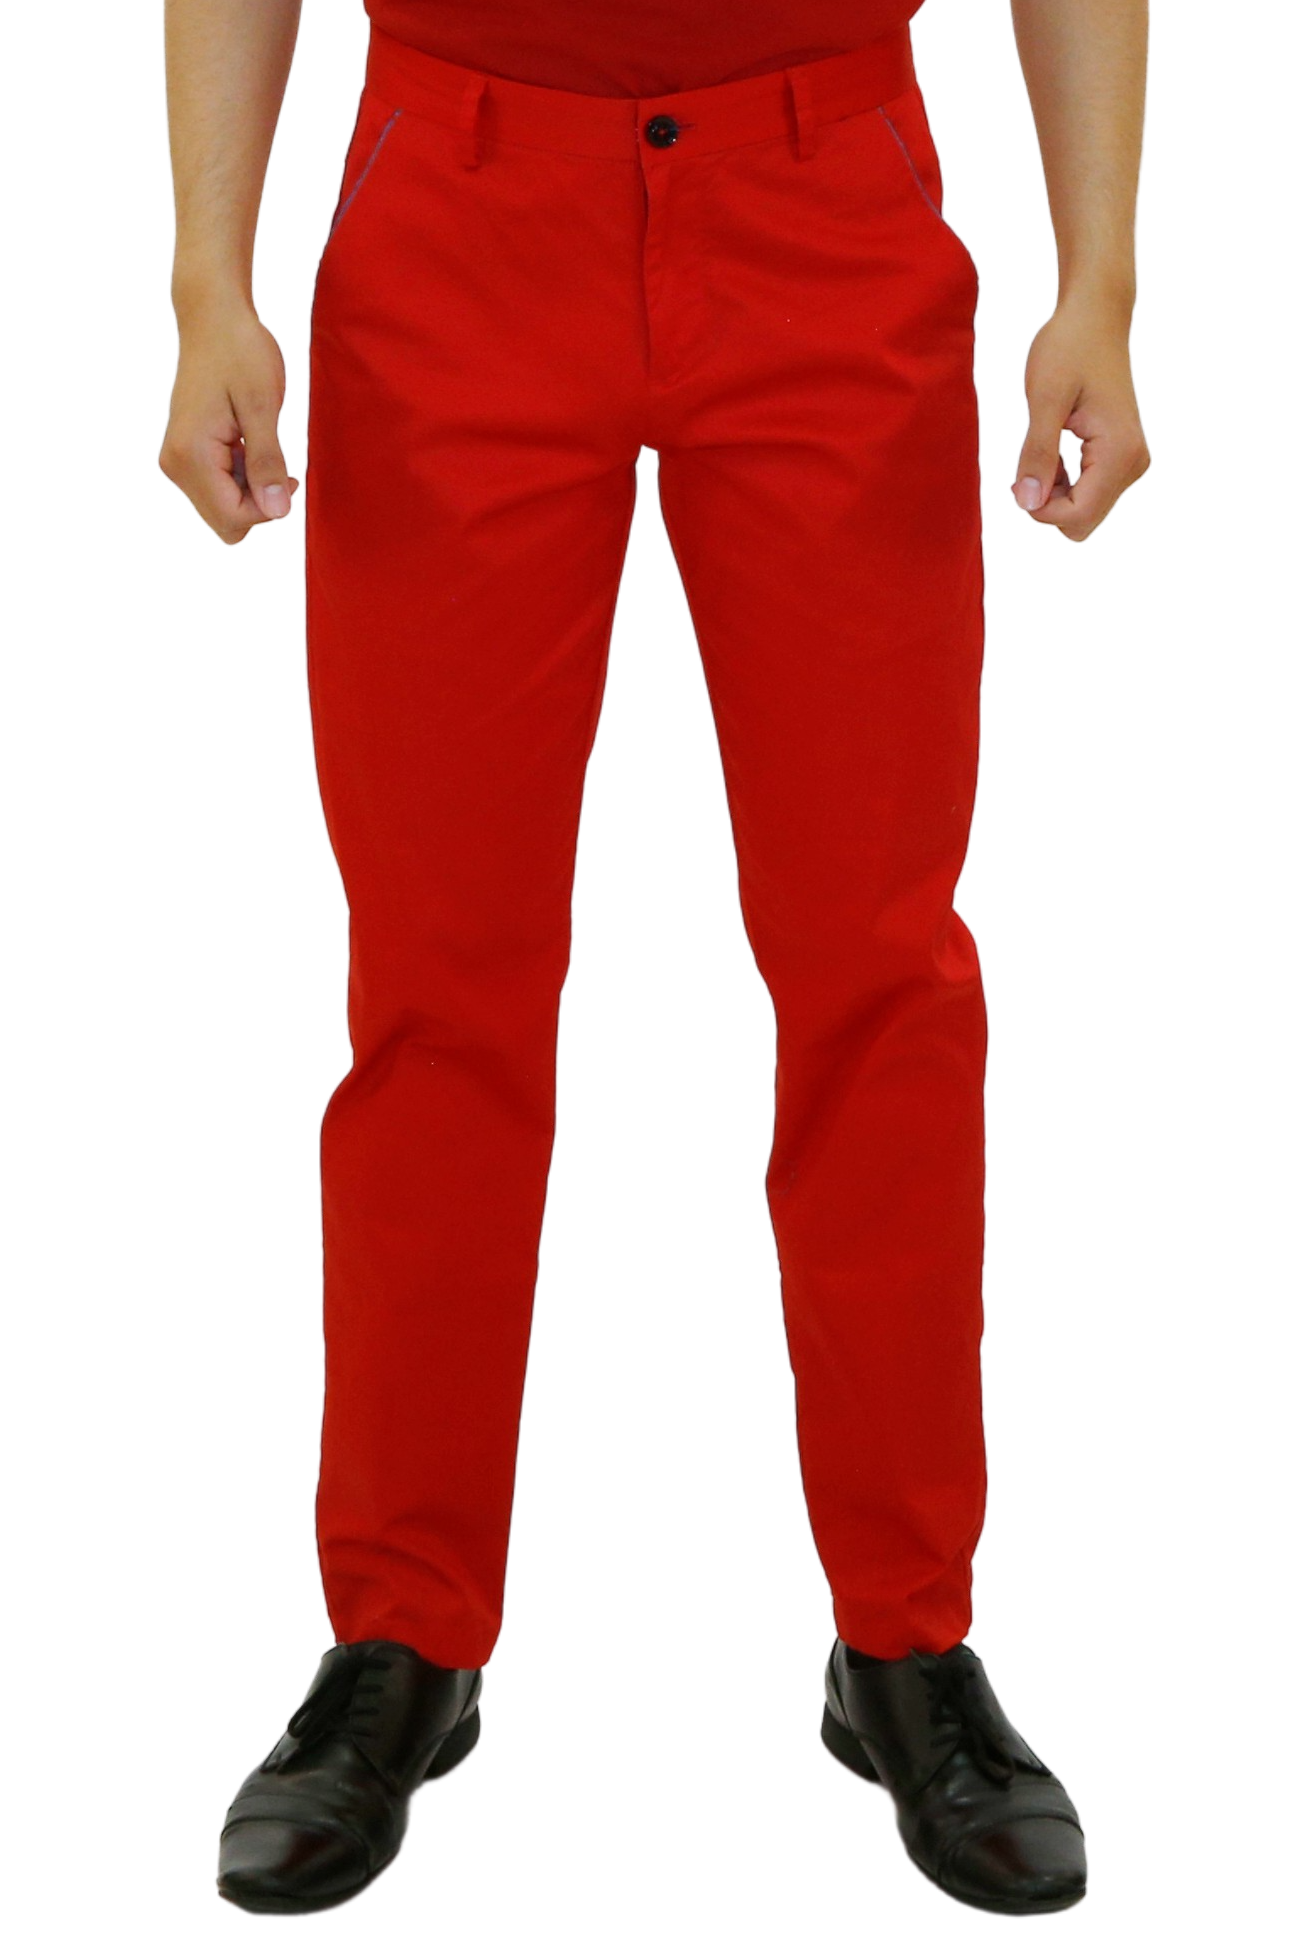 Men's Red Pants